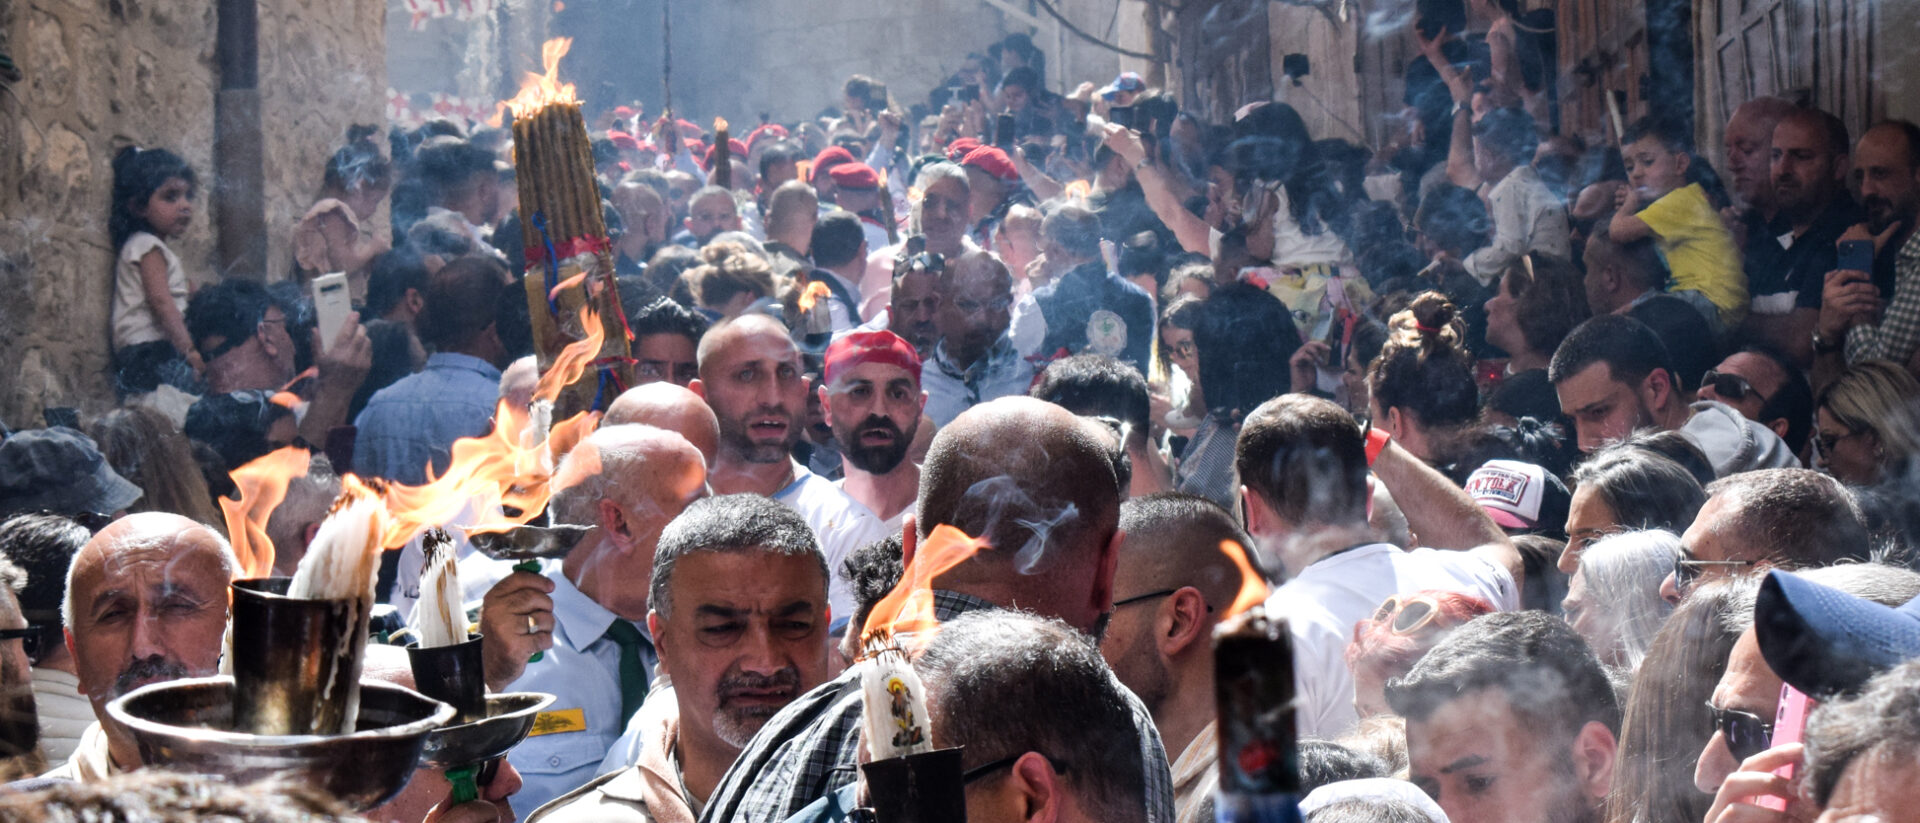 Le Feu Sacré se répand dans les rues bondées du quartier chrétien de Jérusalem lors du “Samedi de la Lumière”, en avril 2022 | © Clémence Levant